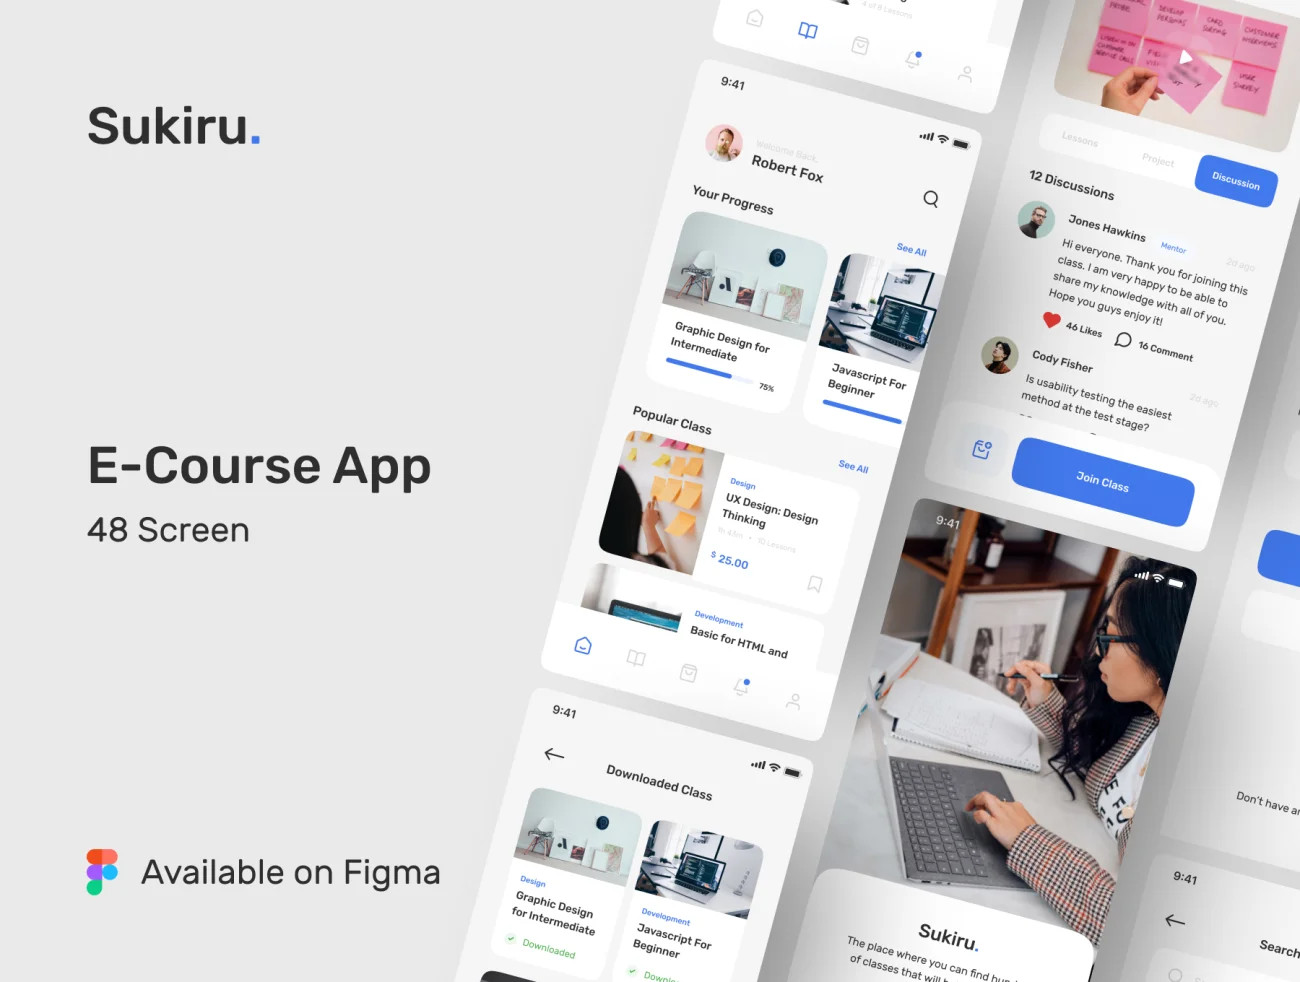 40屏完整版网课在线学习ios应用程序UI套件 Sikiru – E-Course App UI Kit插图1